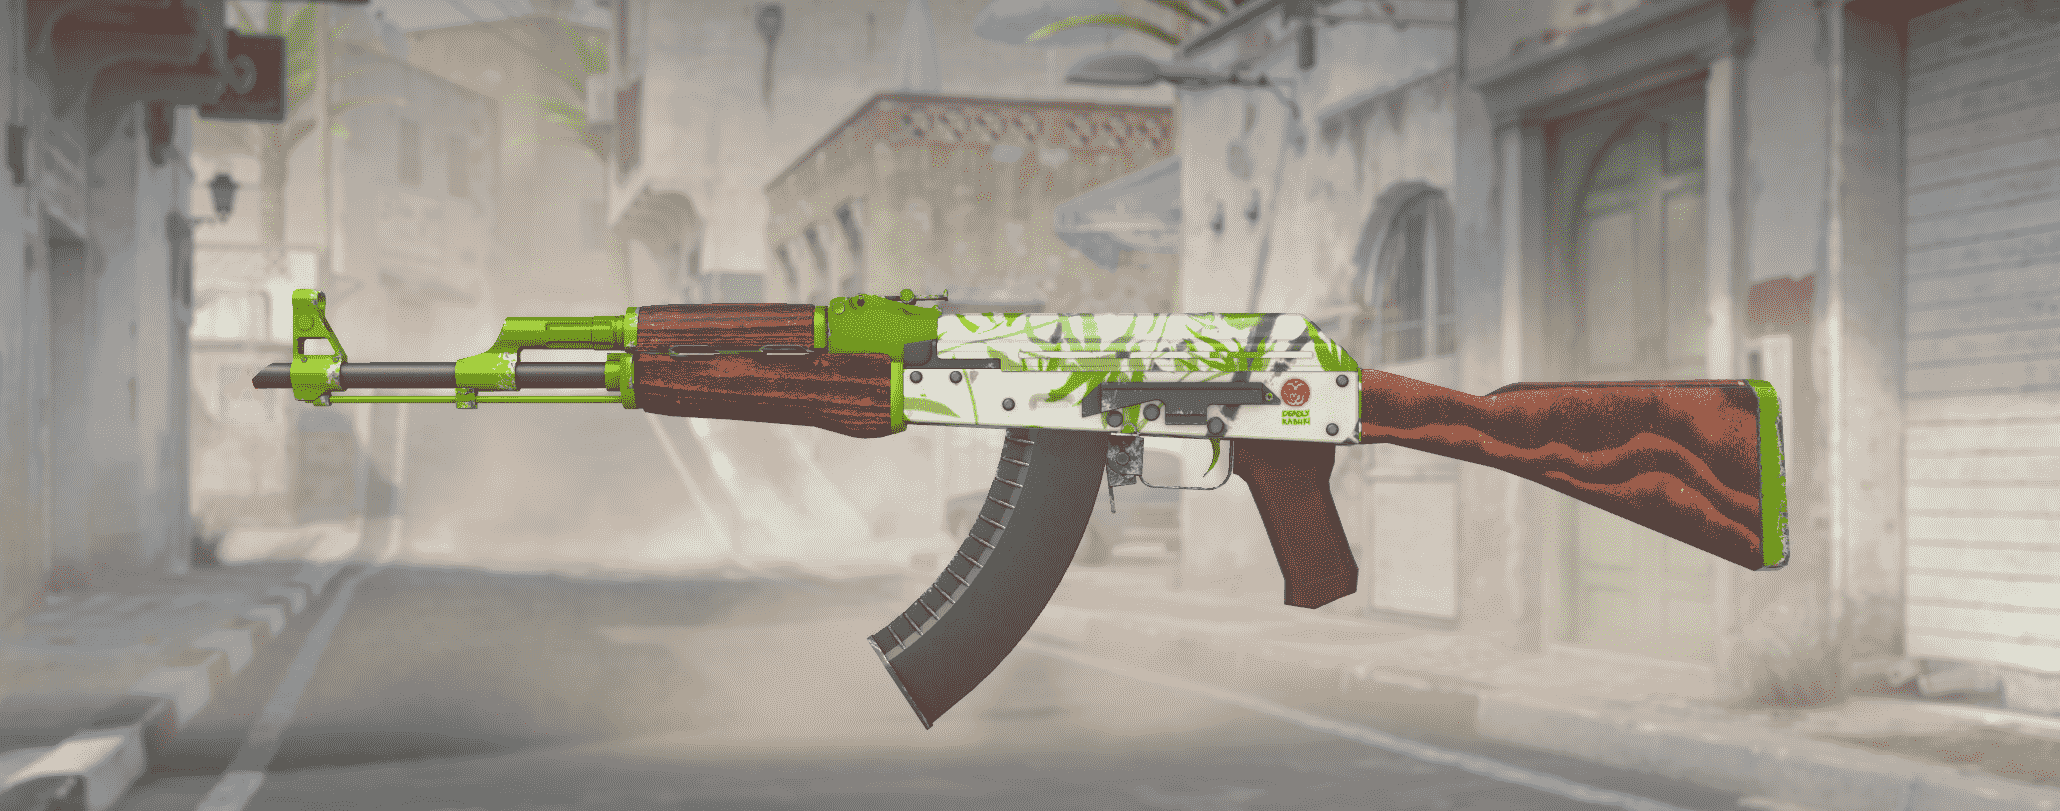 AK-47 Hydroponique